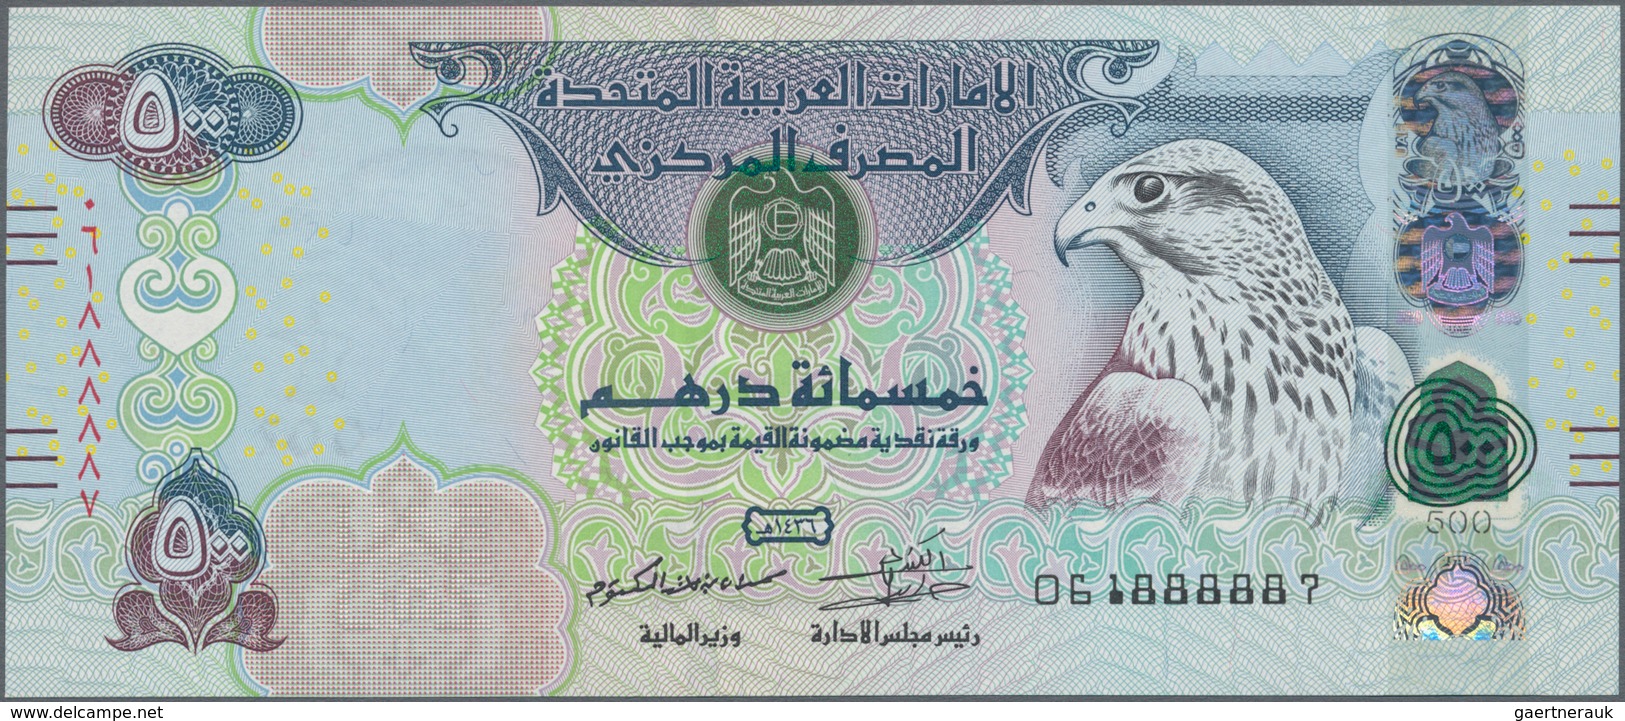 United Arab Emirates / Vereinigte Arabische Emirate: United Arab Emirates Central Bank 500 Dirhams 2 - Emiratos Arabes Unidos